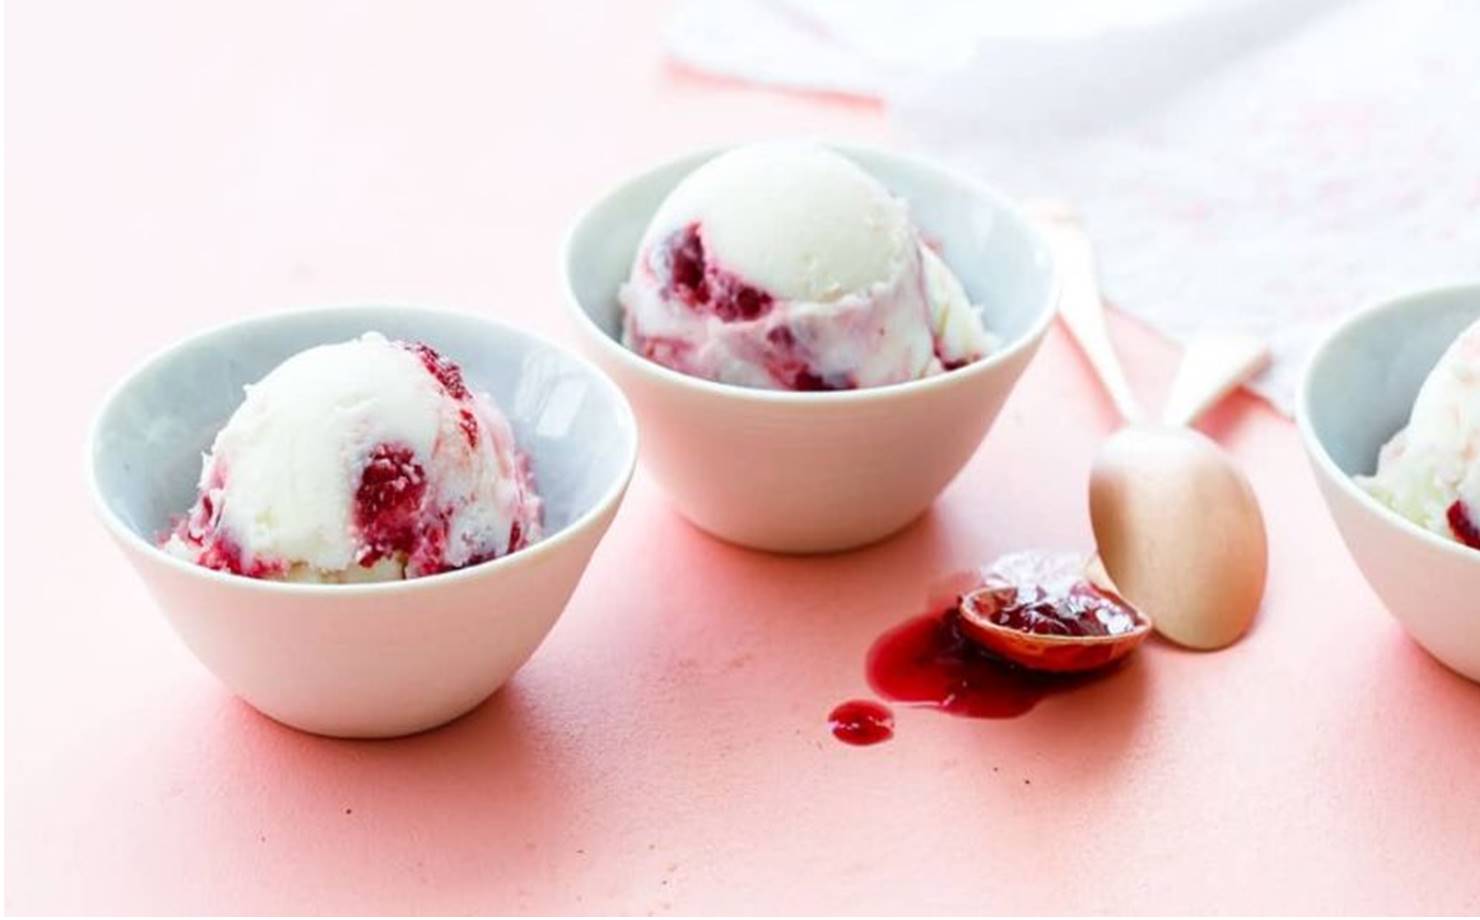 Faça seu próprio sorvete de iogurte com apenas 4 ingredientes